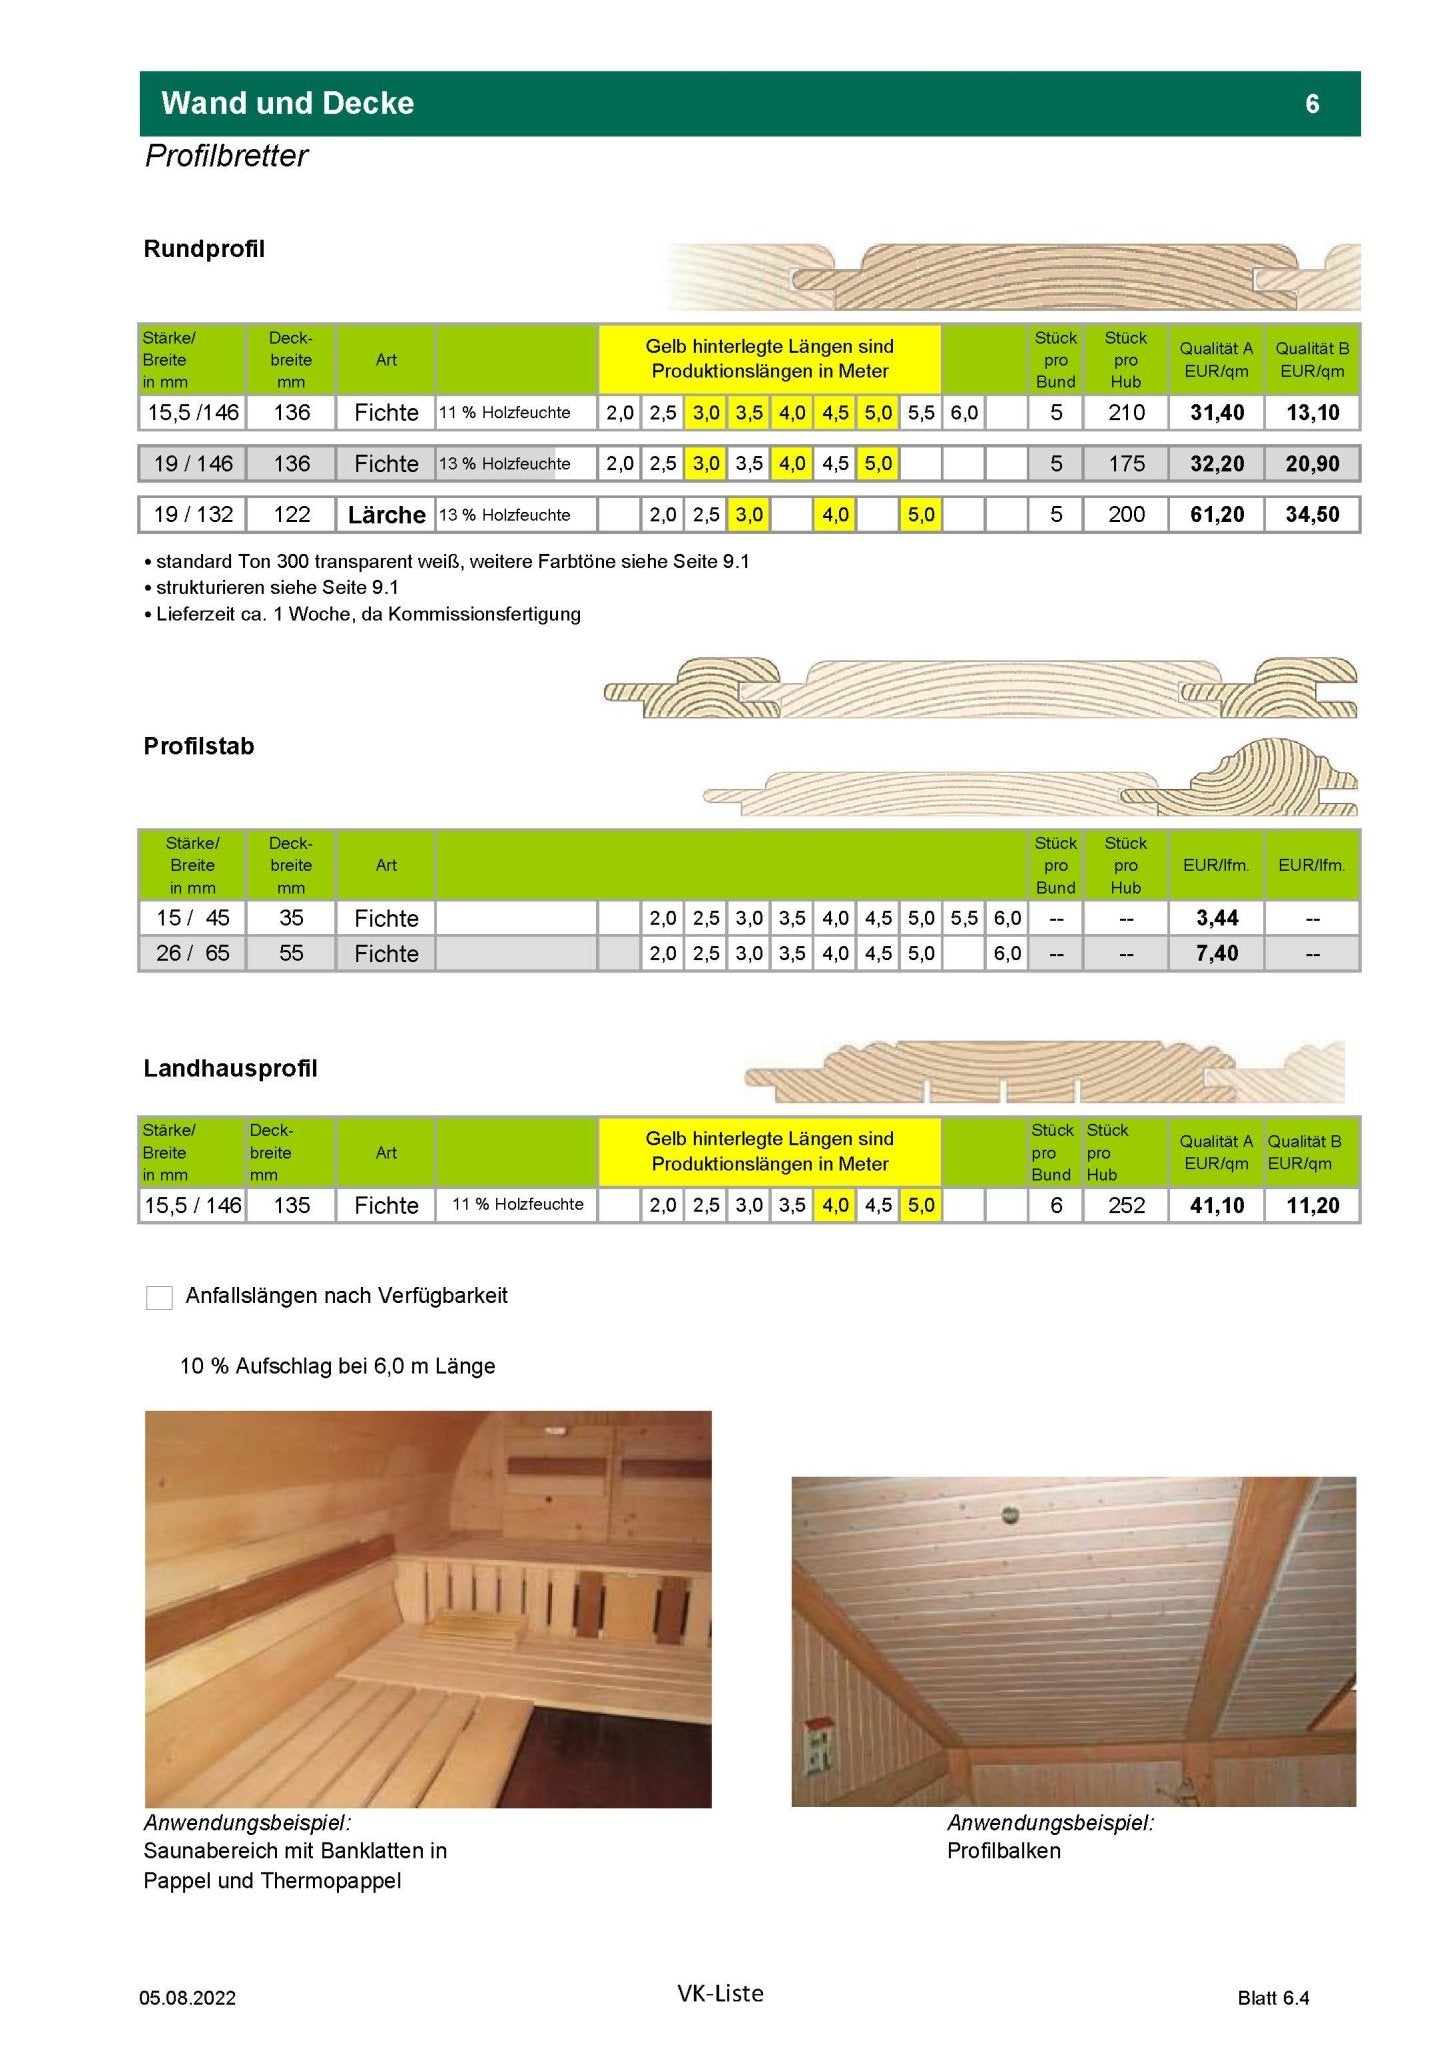 mehr Profilbretter - kaufen Meine Holzhandlung - Holz kaufen München